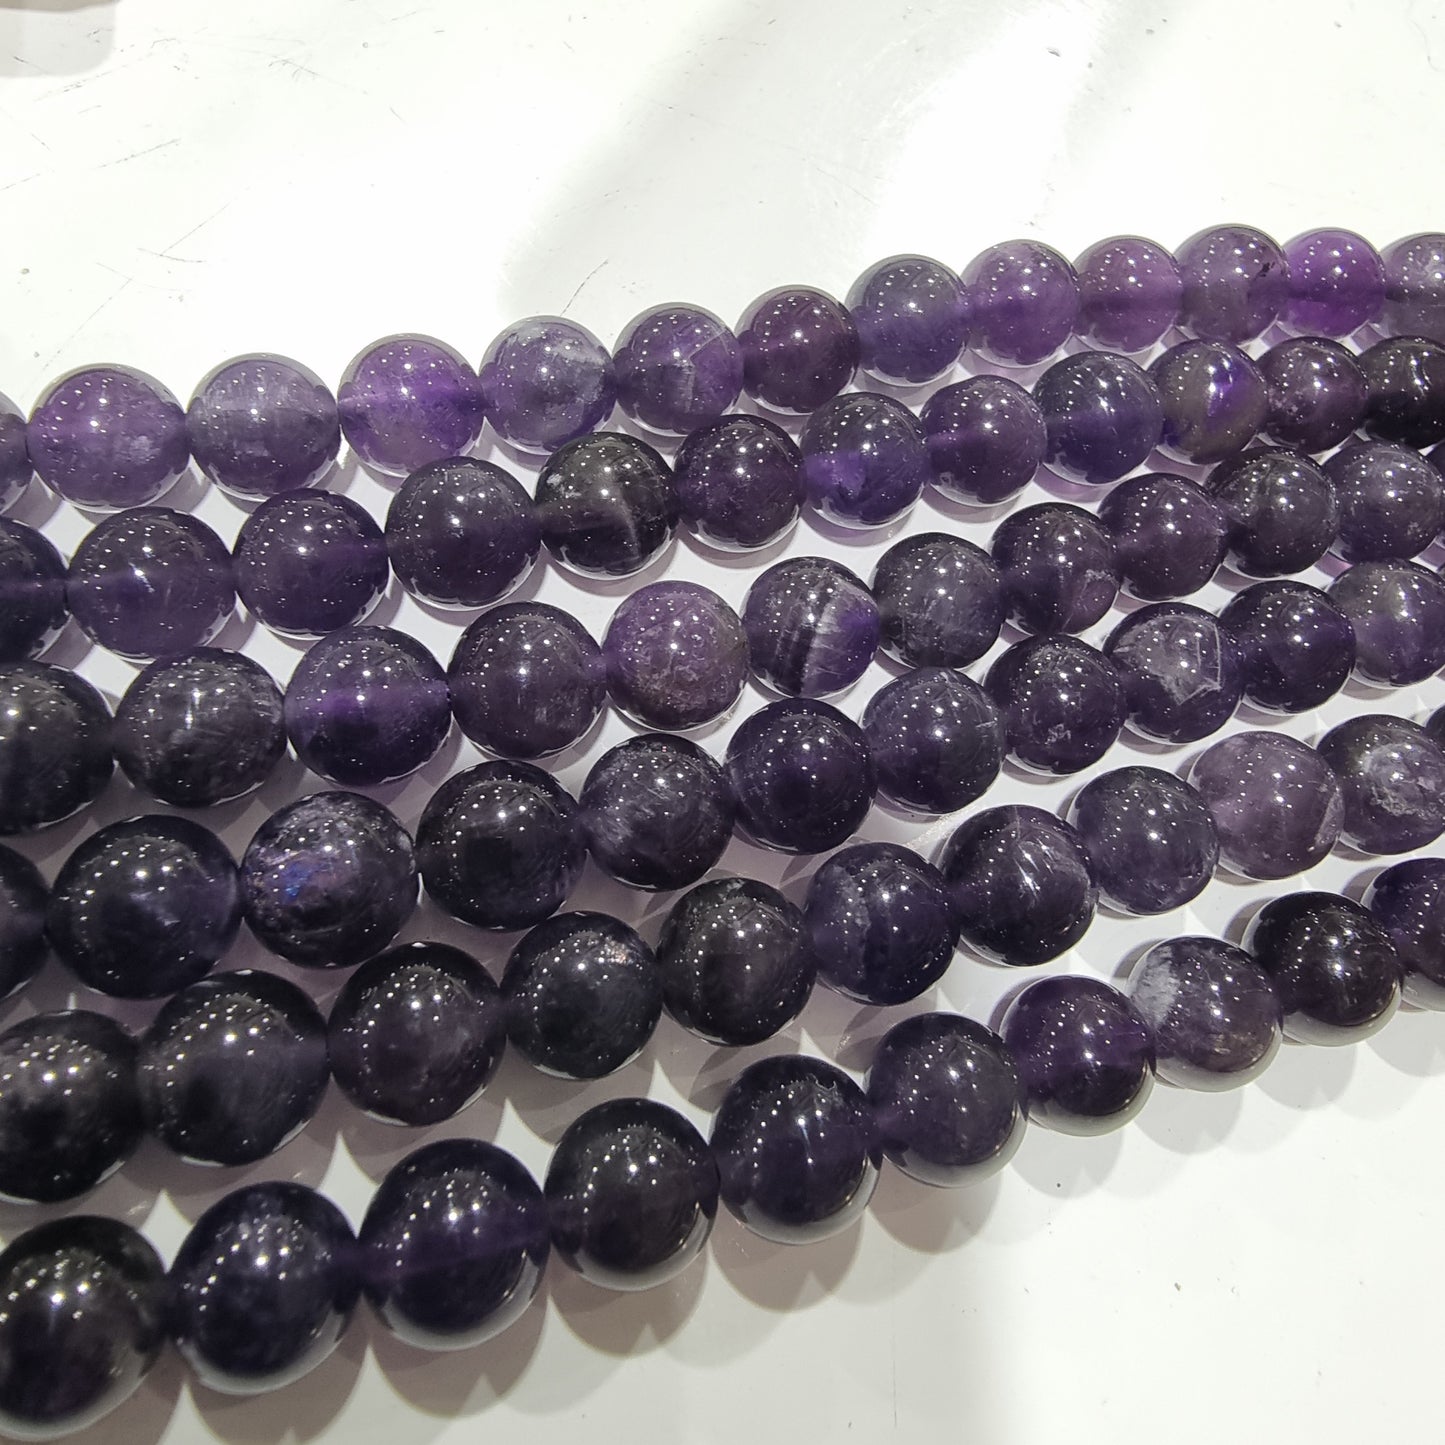 7mm Amethyst Round Gemstone Beads